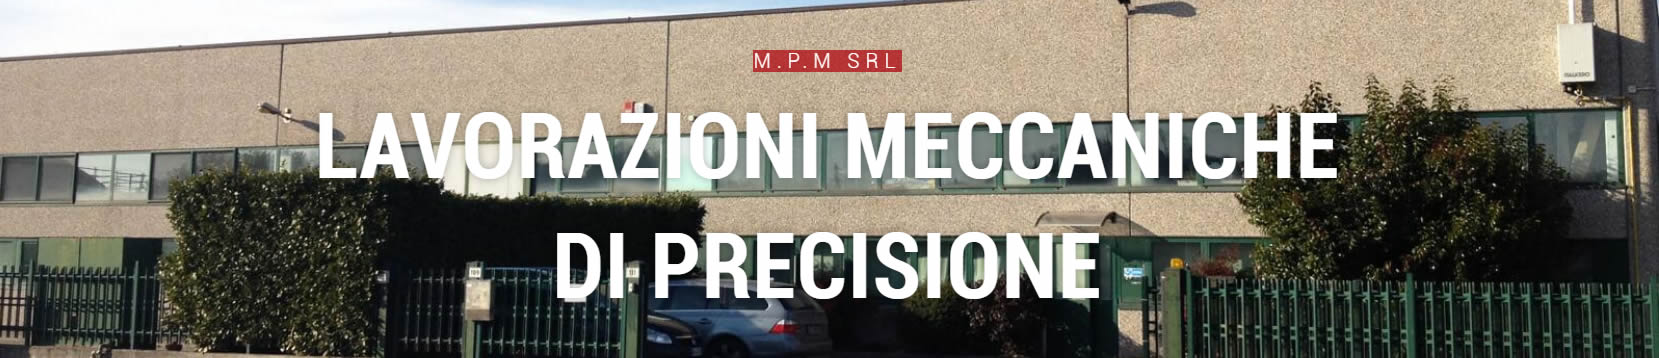 Officina meccanica di precisione Caronno Pertusella MPM srl